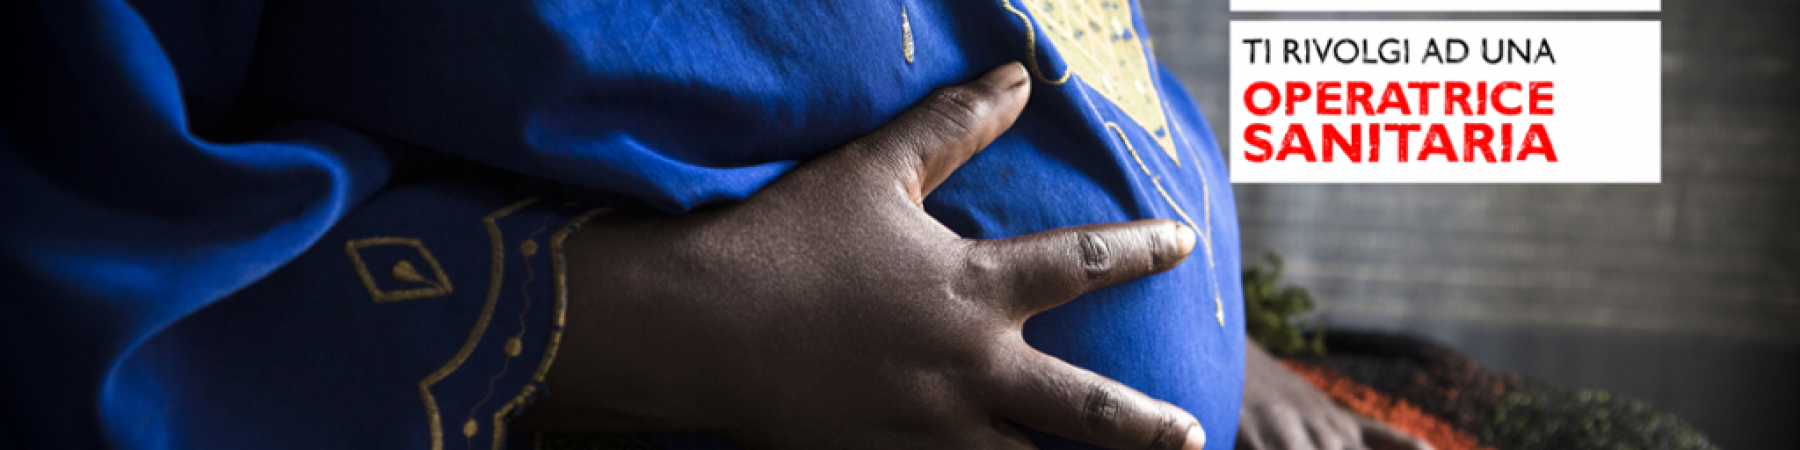 Se tu fossi una futura mamma in un paese in via di sviluppo, a che rischi andresti incontro? Scoprilo nel percorso multimediale